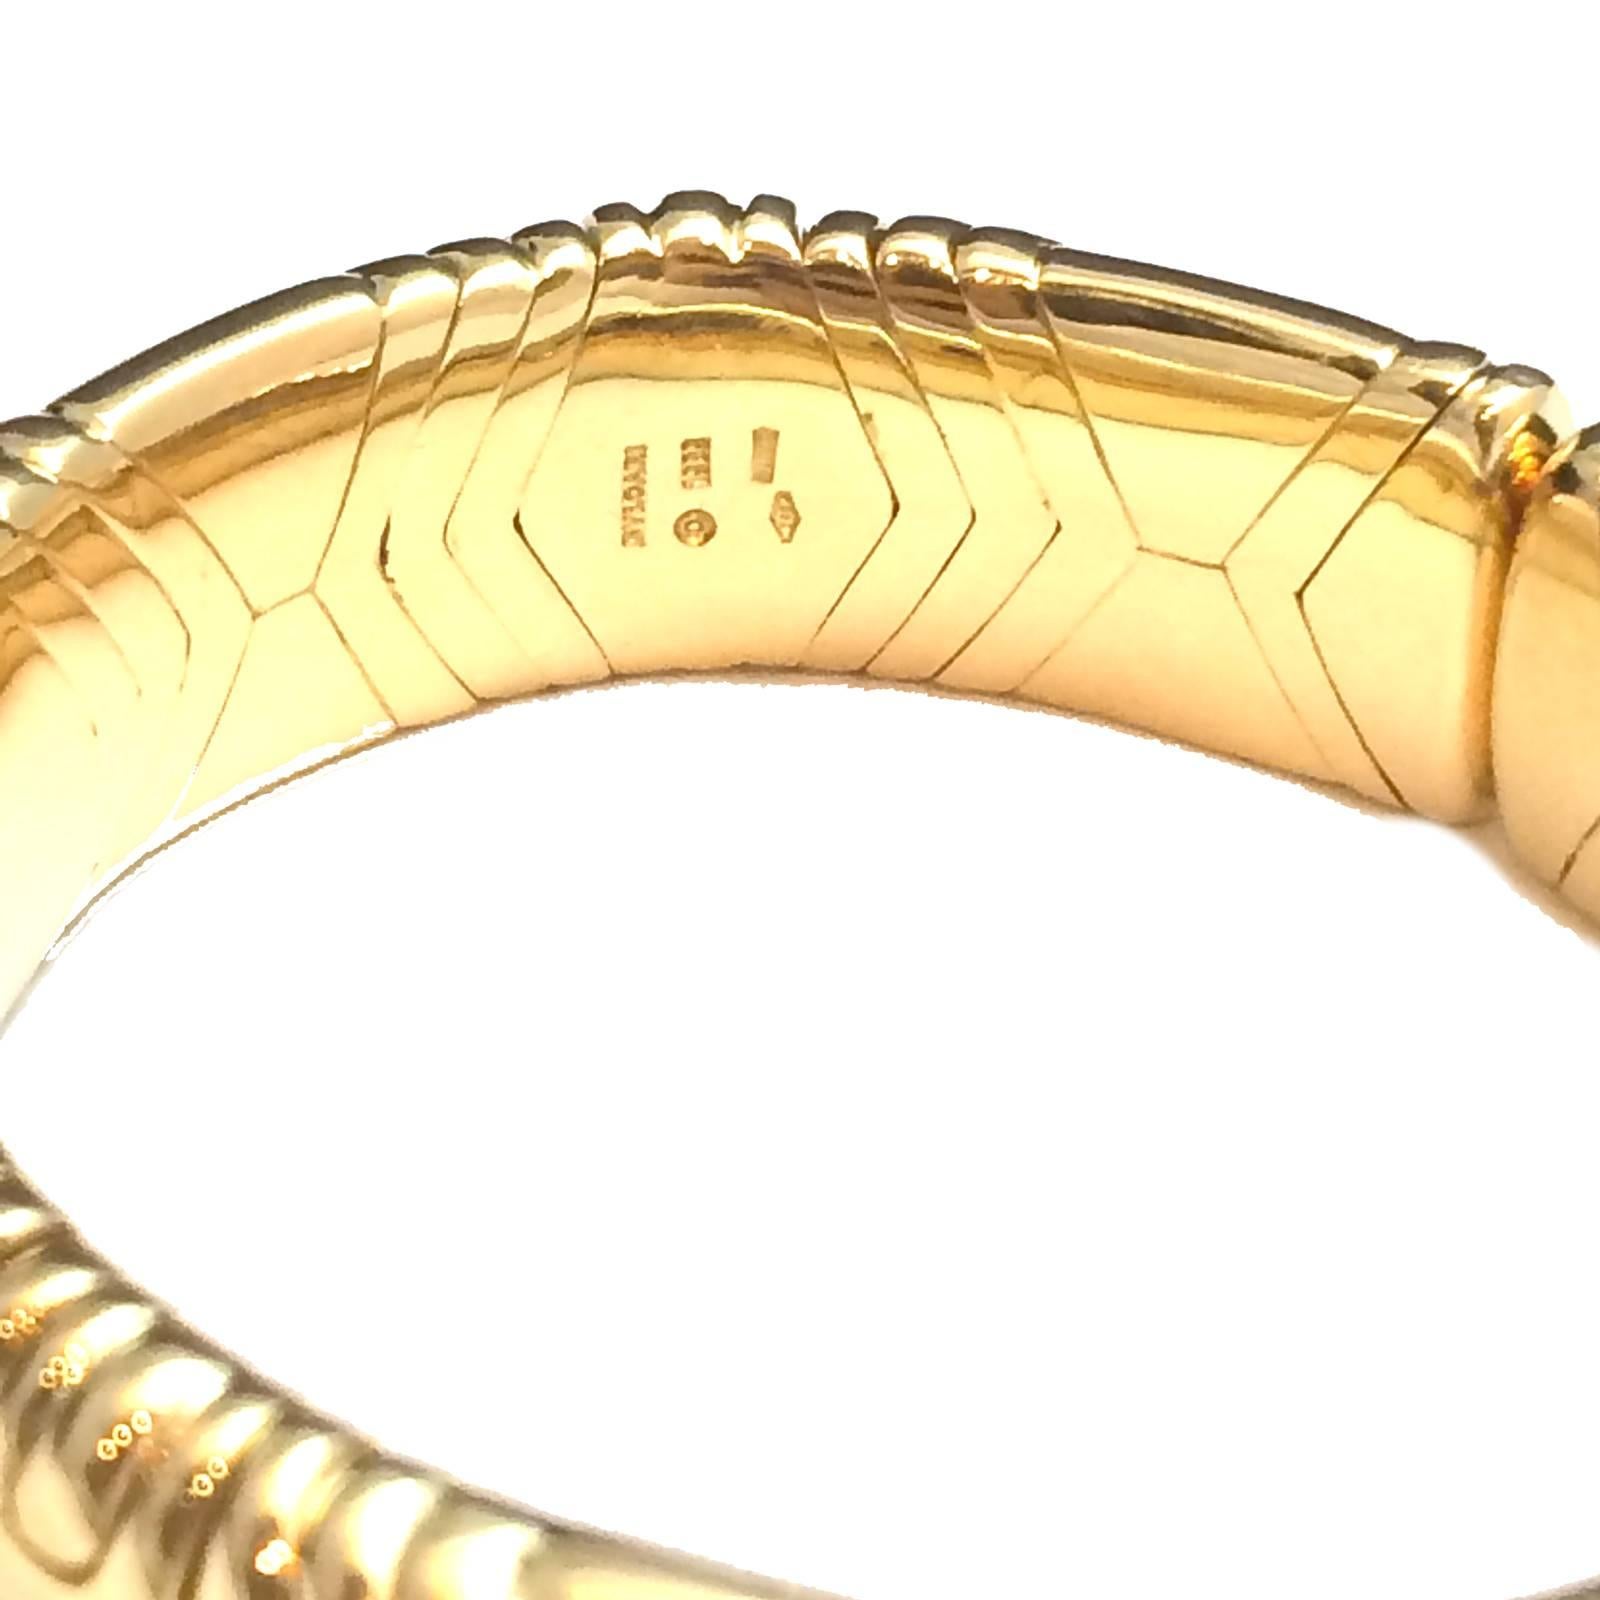 bulgari bracelet gold